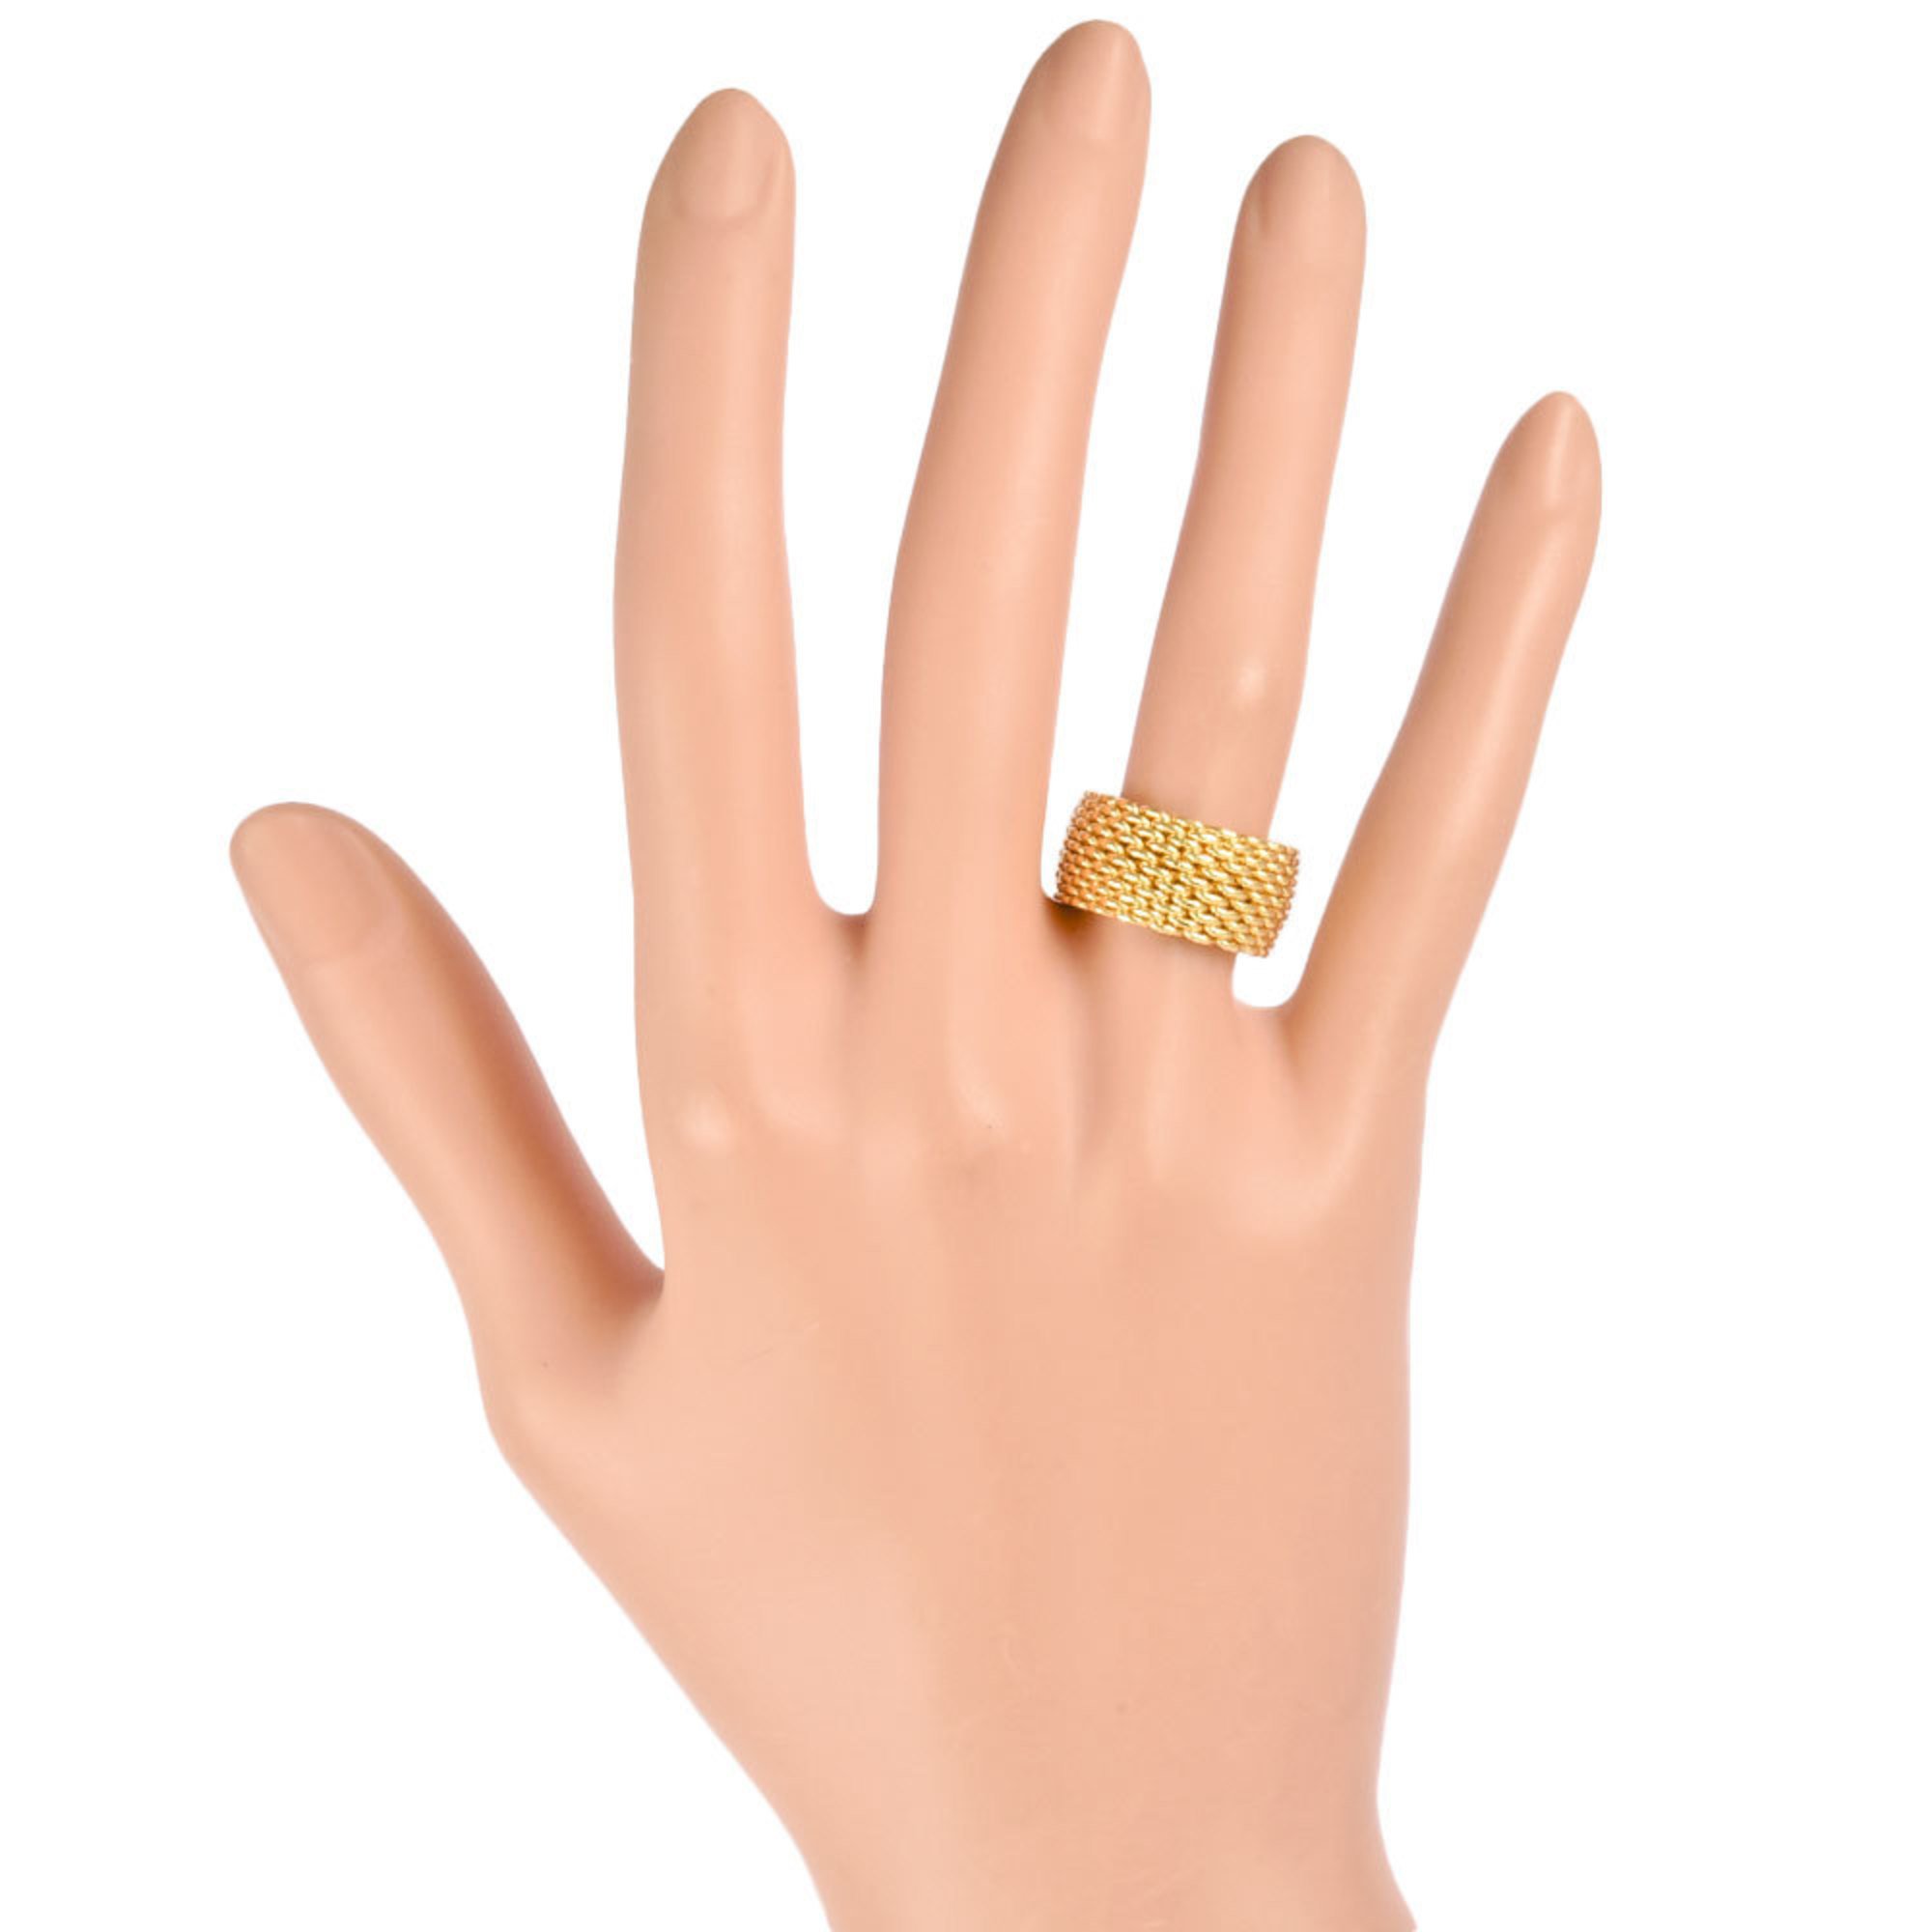 Tiffany & Co. Somerset Ring, Size 12, K18YG, Women's